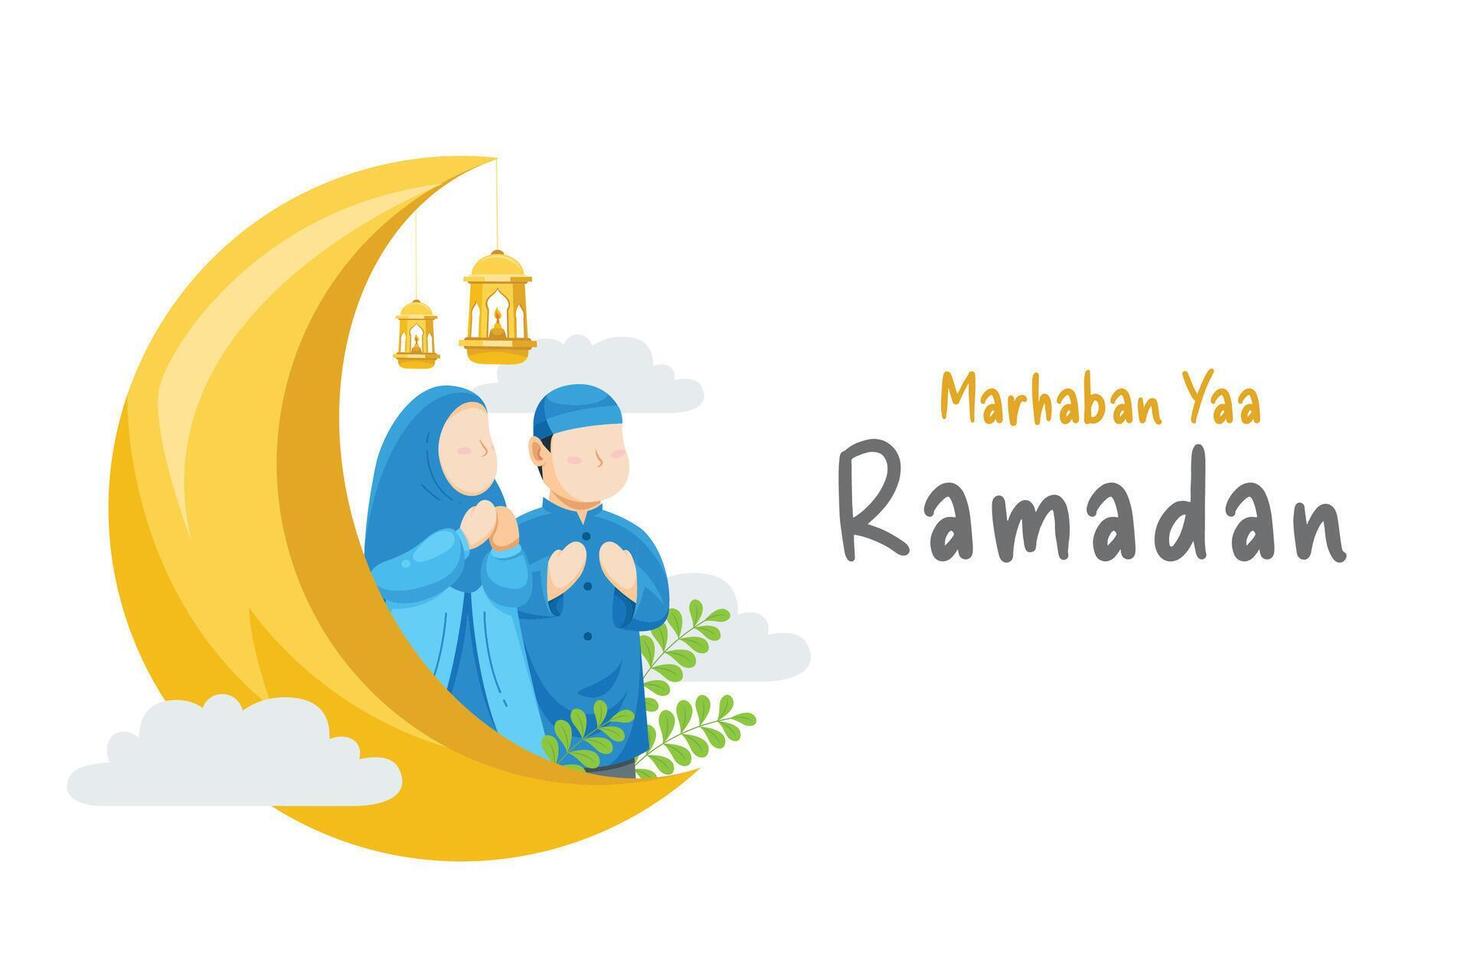 Ramadan kareem islamisch Gruß vektor